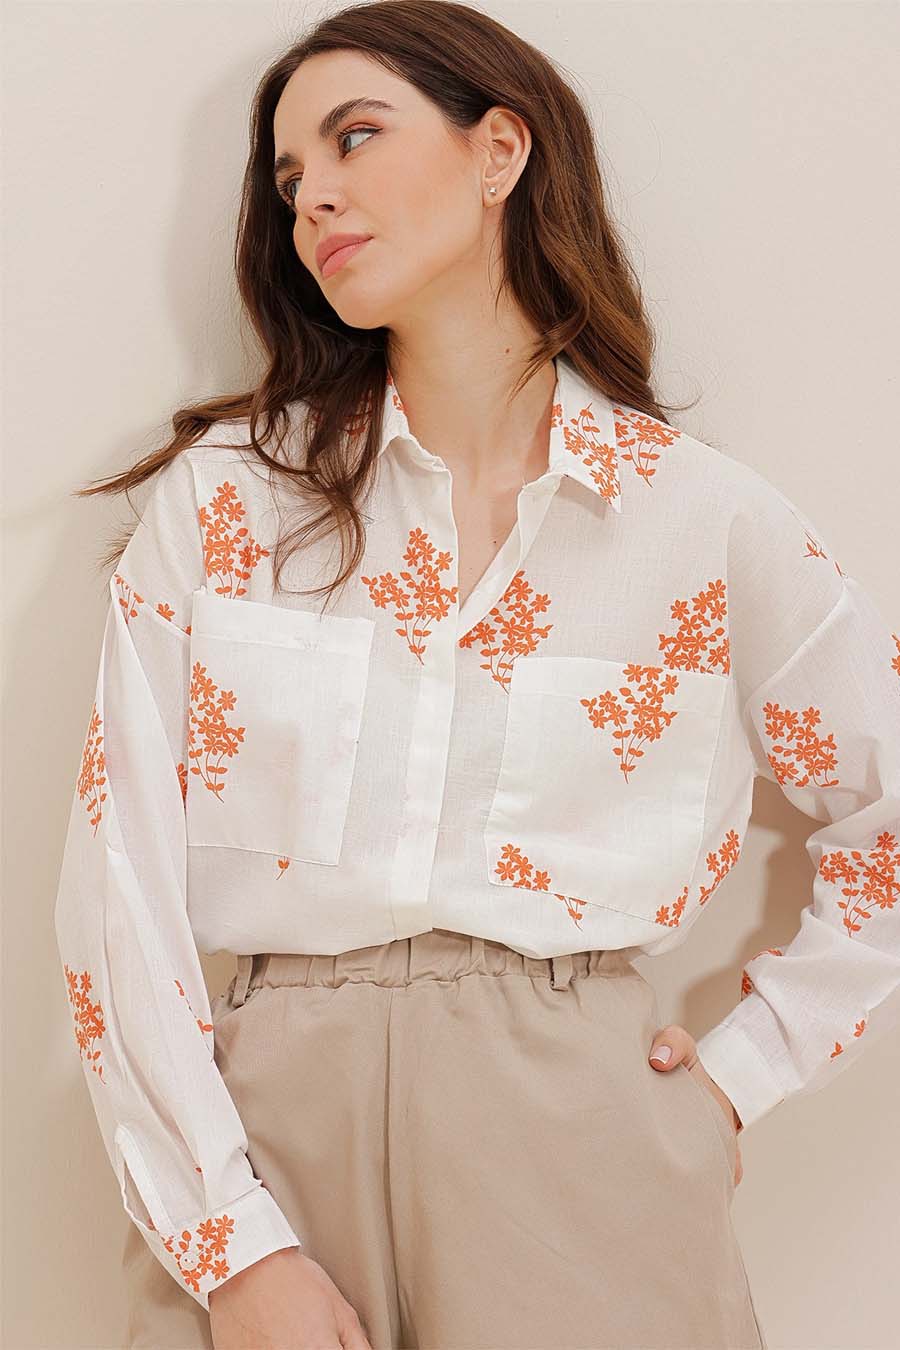 Γυναικείο πουκάμισο Darana, Λευκό/Πορτοκάλι 3